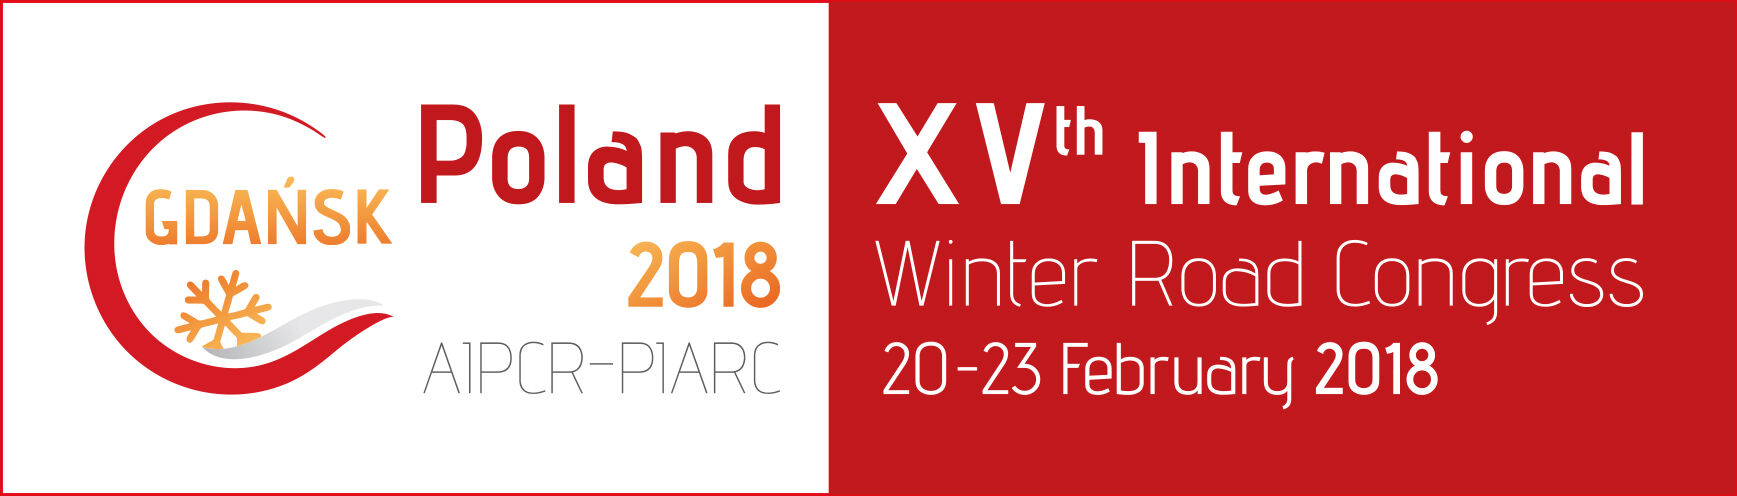 XV
Congreso Internacional de Vialidad Invernal - Gdansk 2018 - PIARC